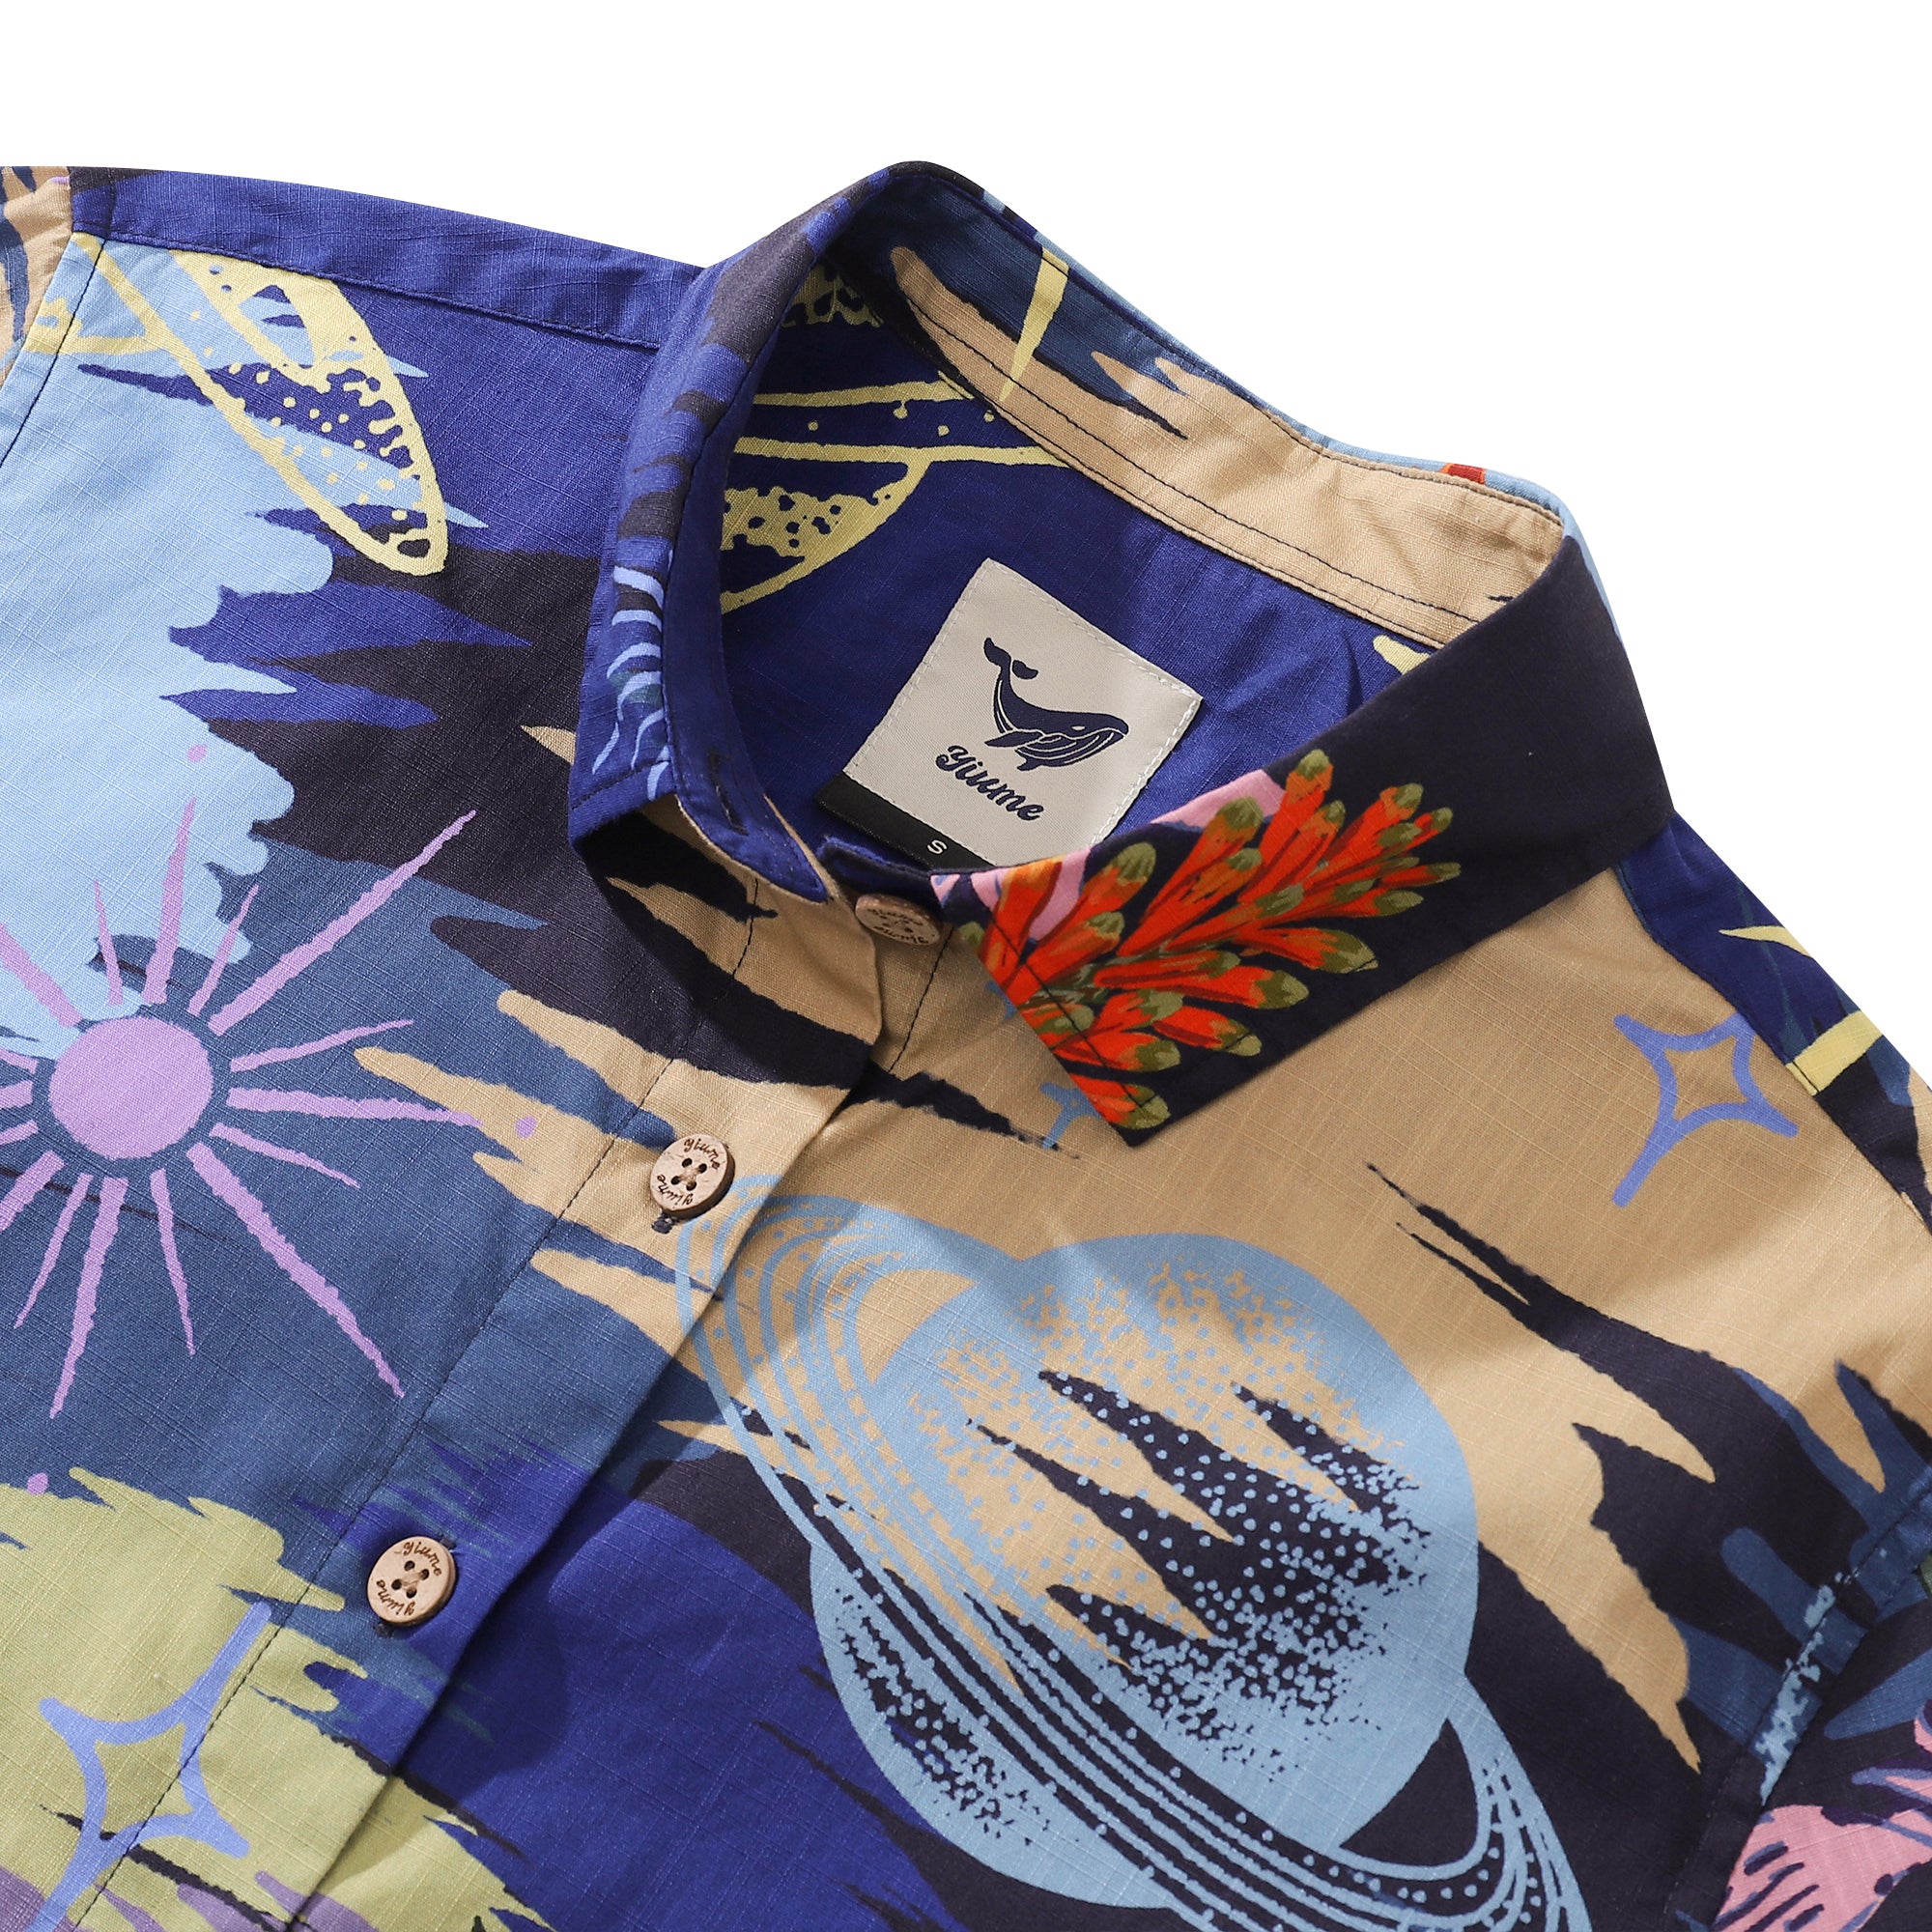 Women's Hawaiian Shirt Garden Under the Moonlight Print Cotton Button-up Short Sleeve